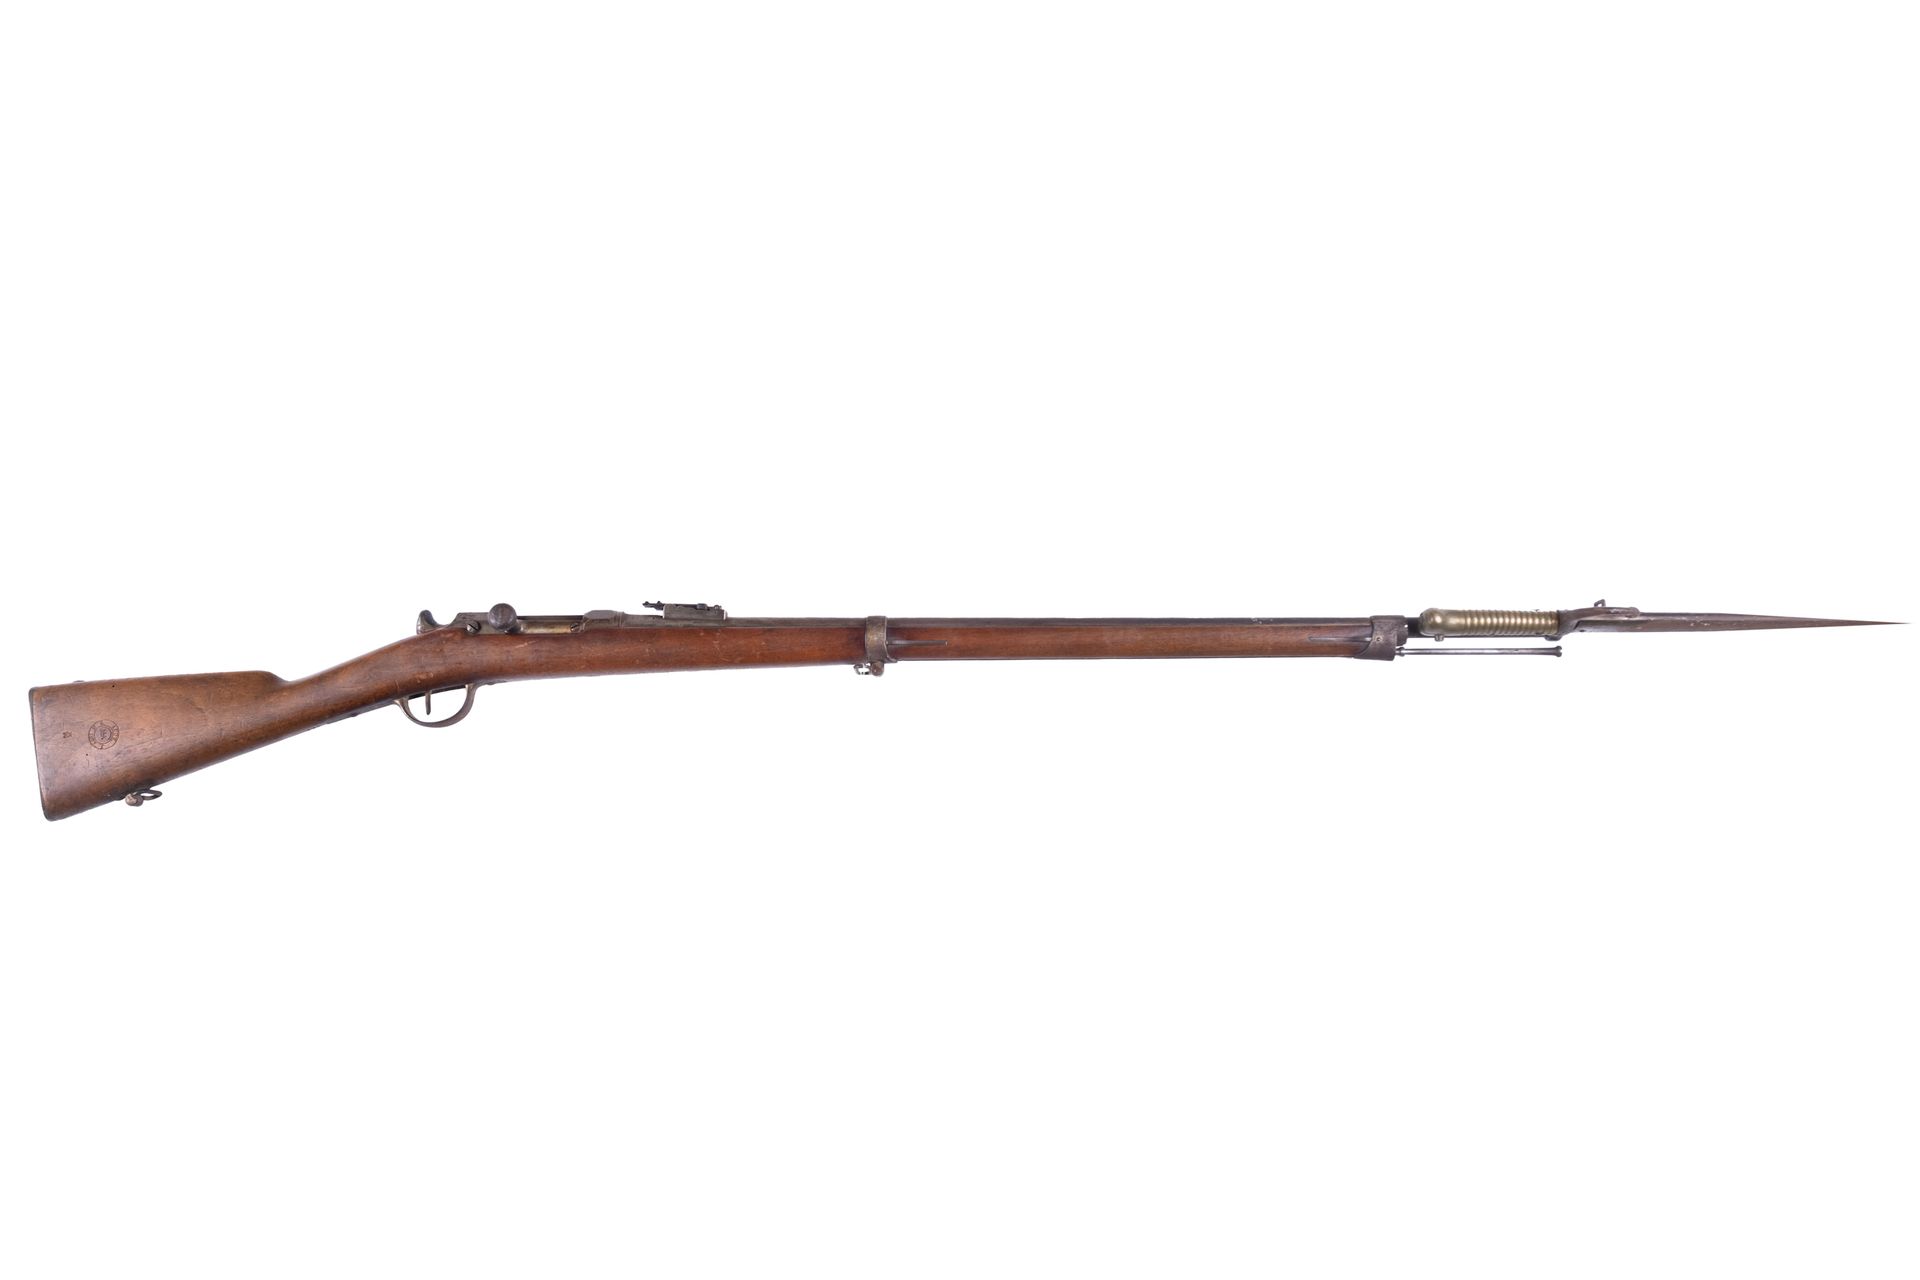 Null Fusil de infantería Chassepot modelo 1866, S 1873, calibre 11mm. 

Cañón re&hellip;